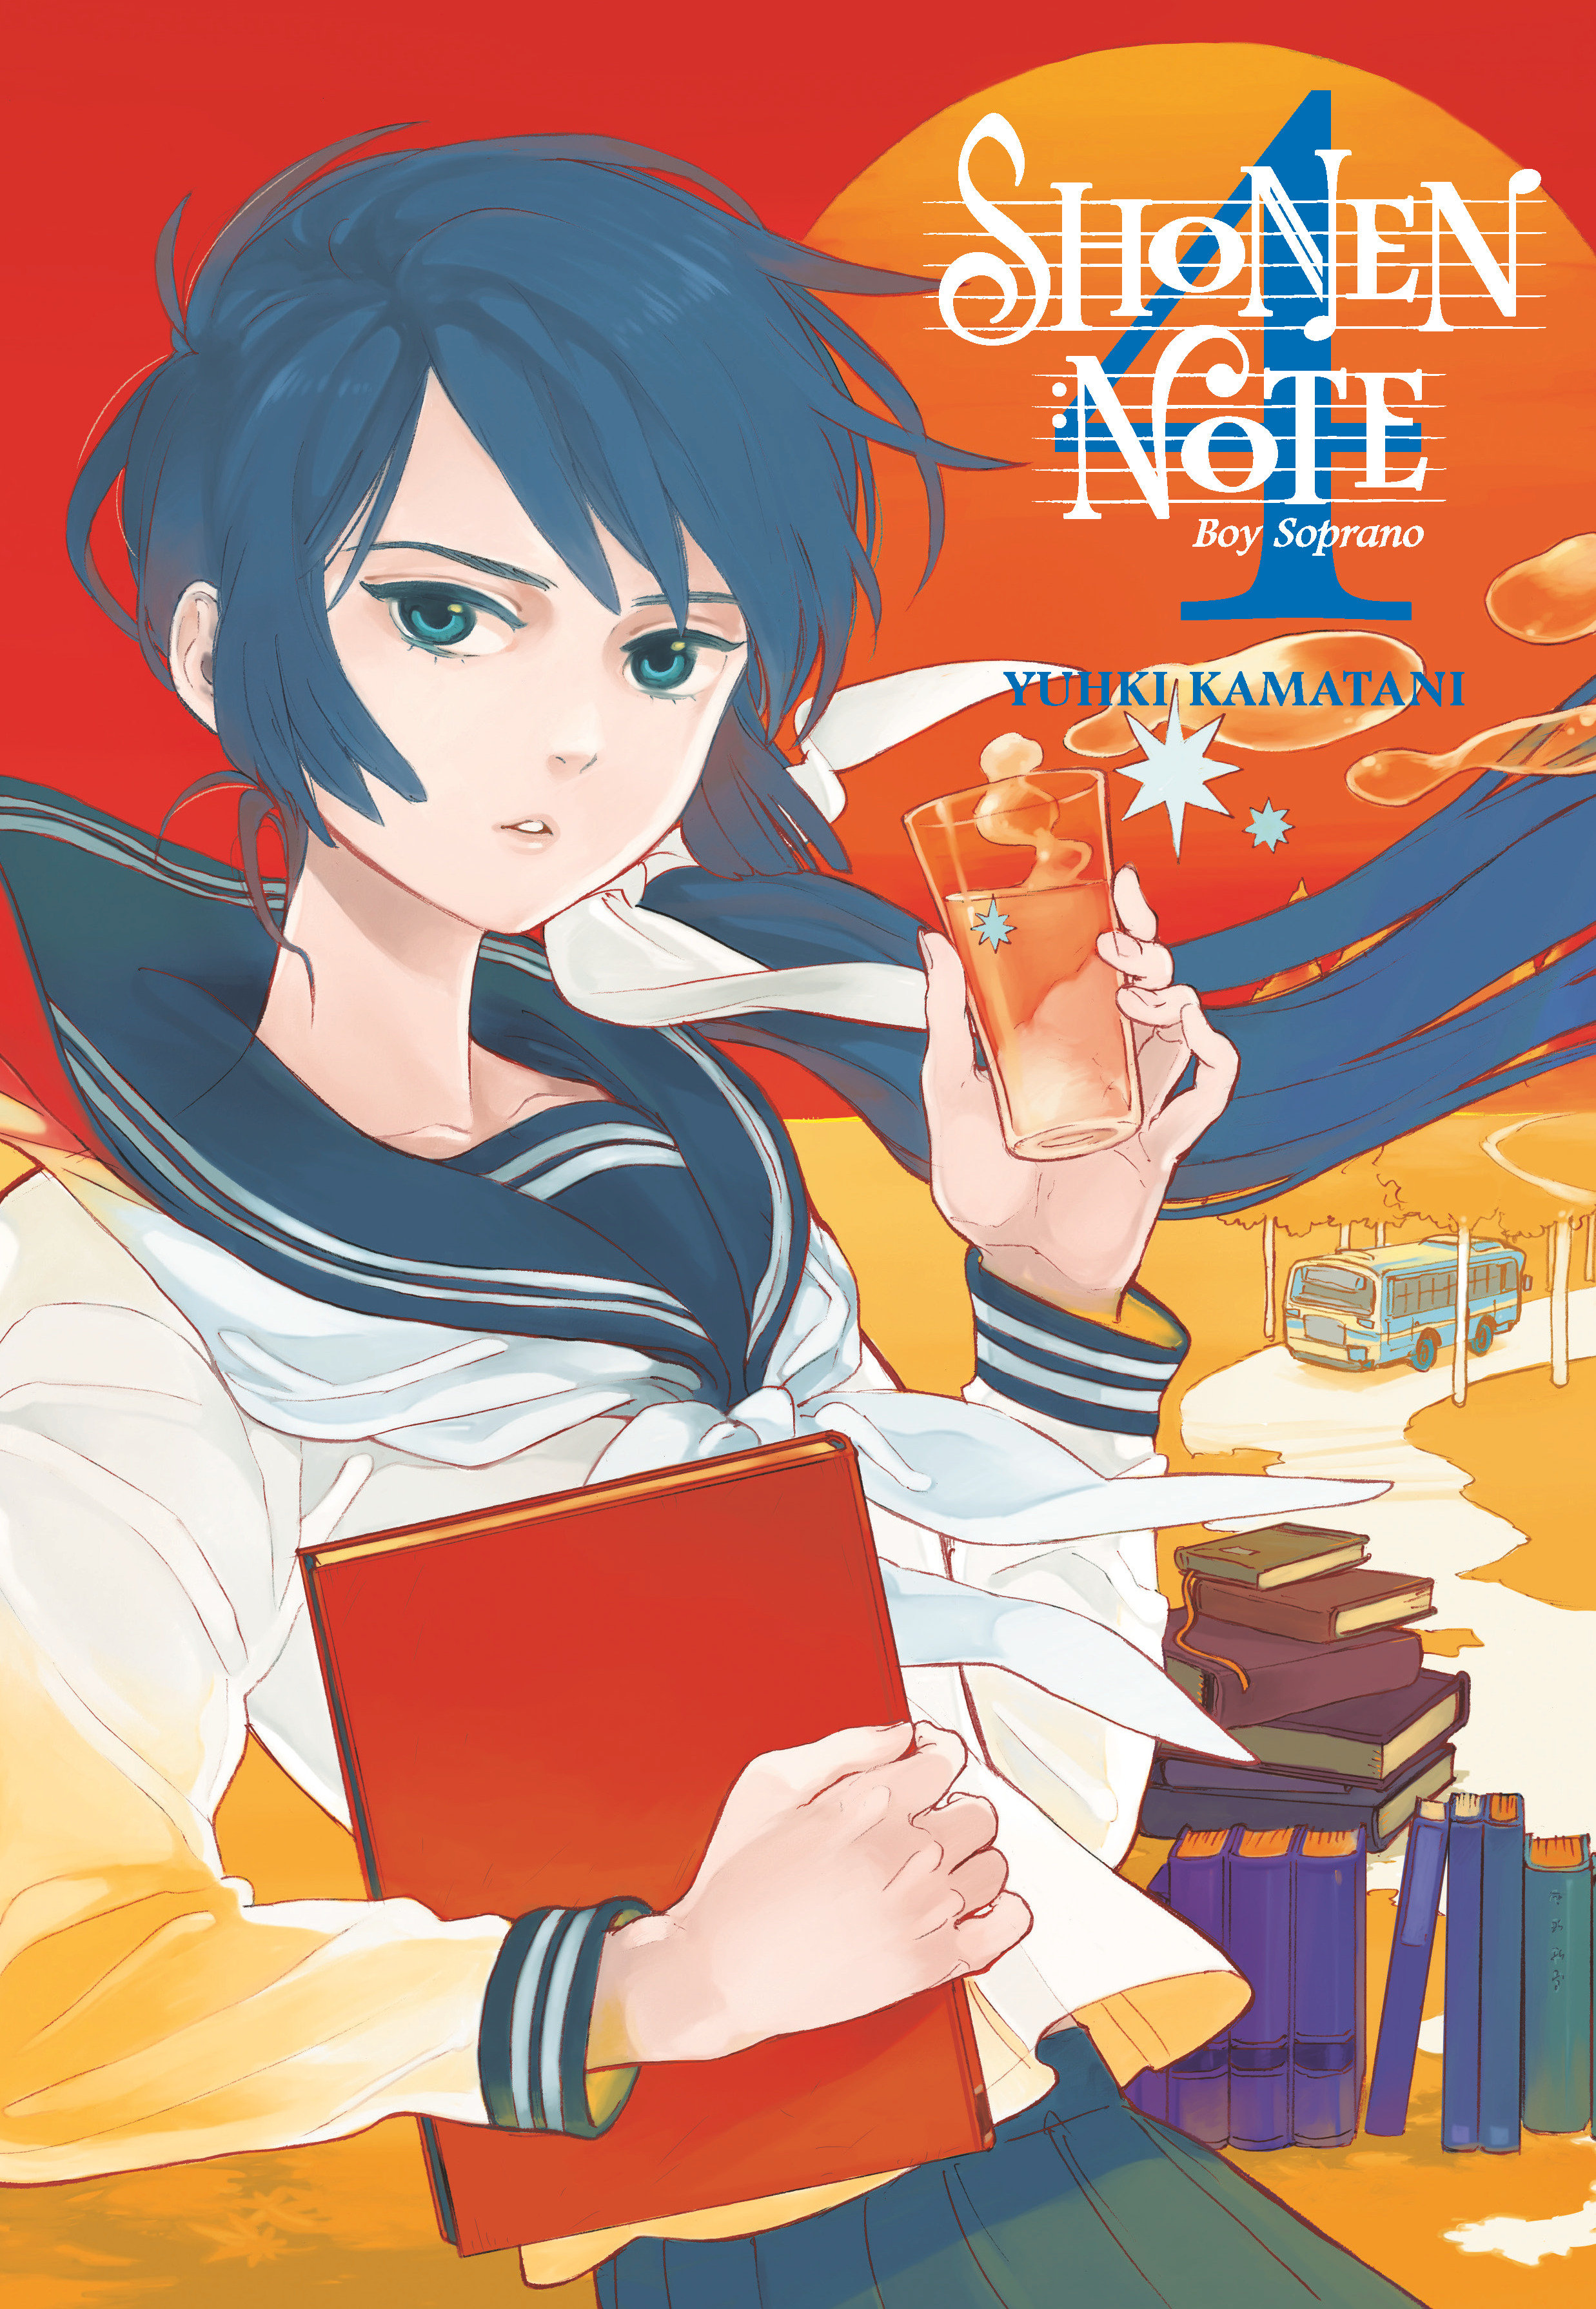 Shonen Note Boy Soprano Manga Volume 4